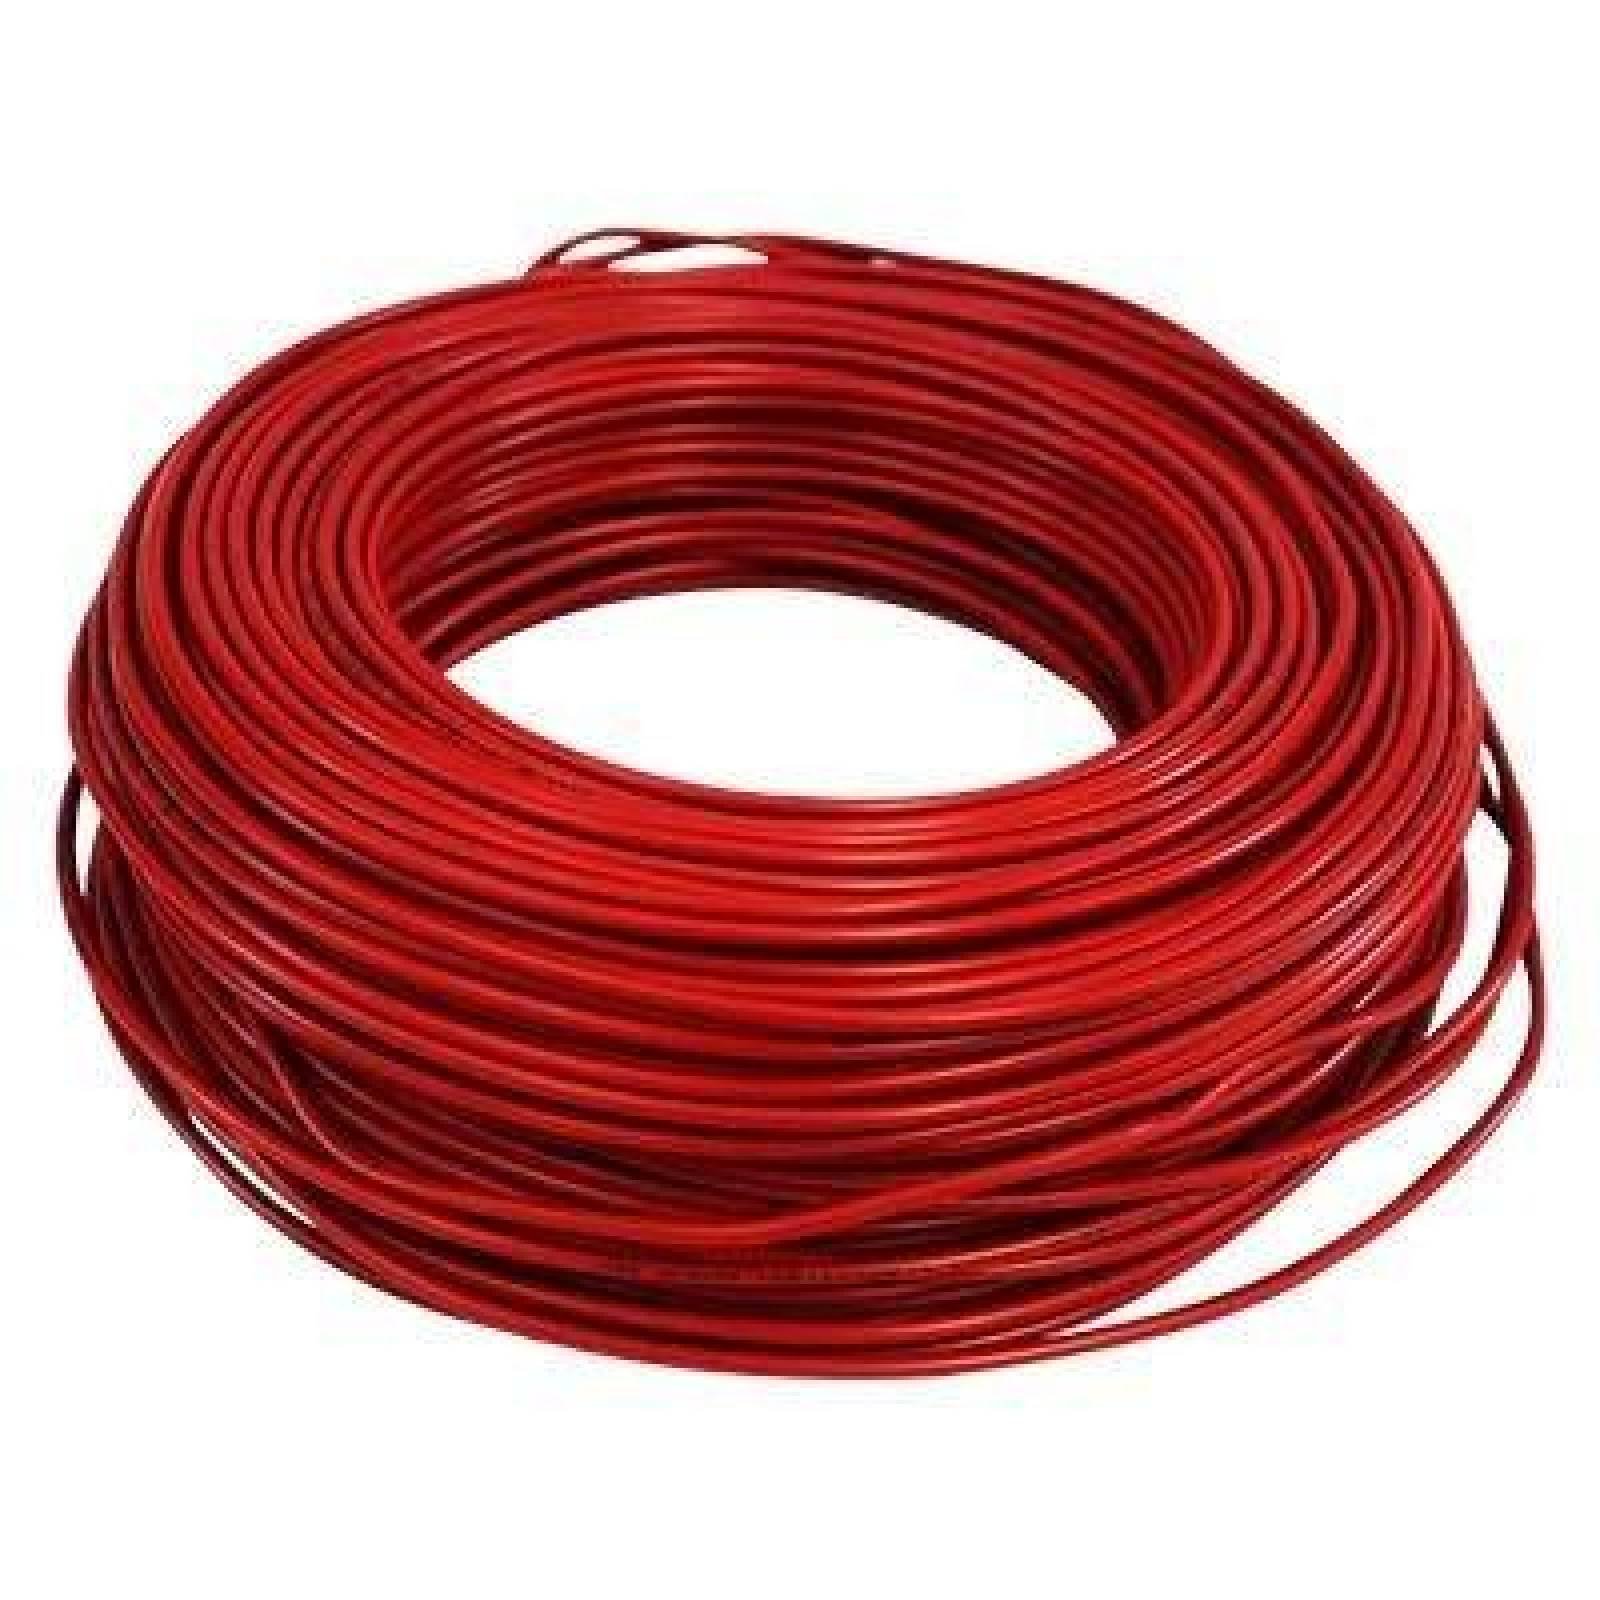 Cable Electrico Iusa Rojo Thwc 14 5036